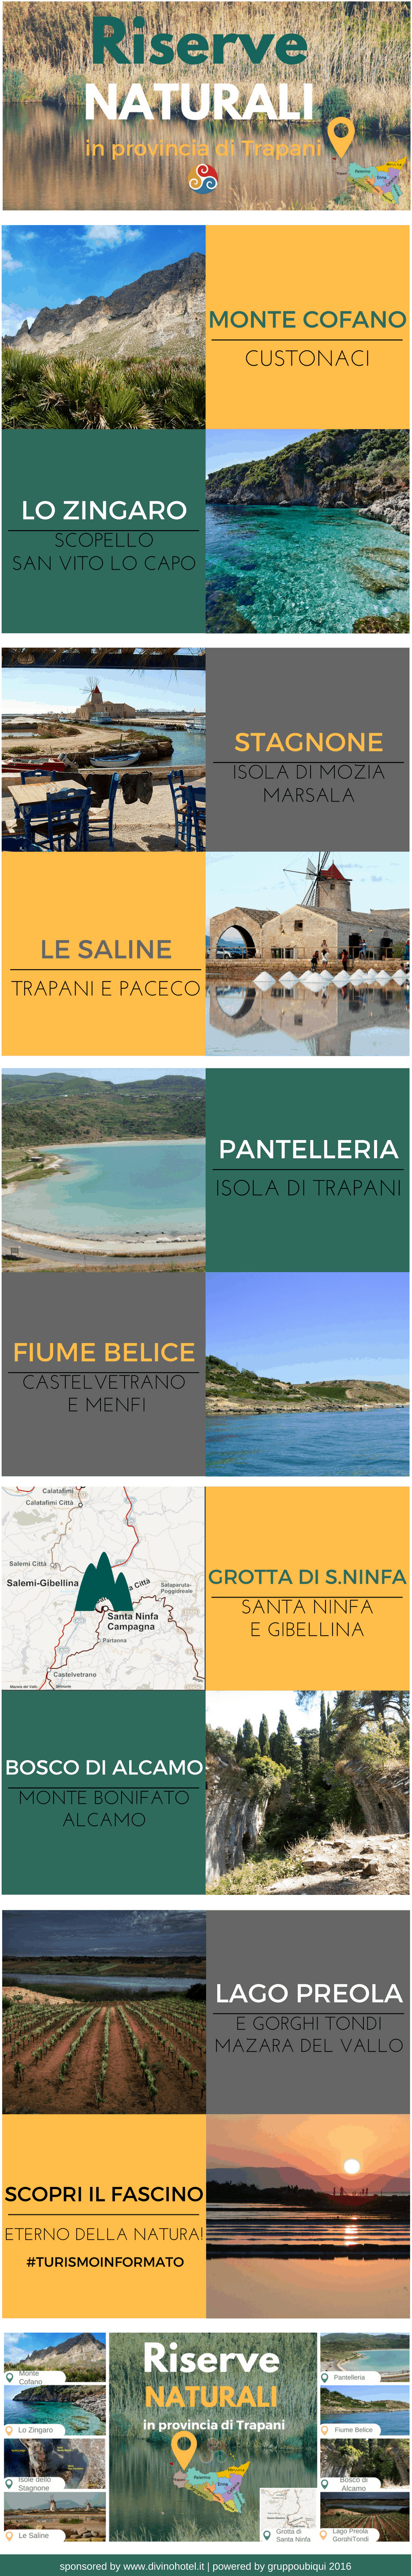 In questa infografica sono inserite le foto e le immagini di tutte le più belle riserve naturali nella Sicilia occidentale.